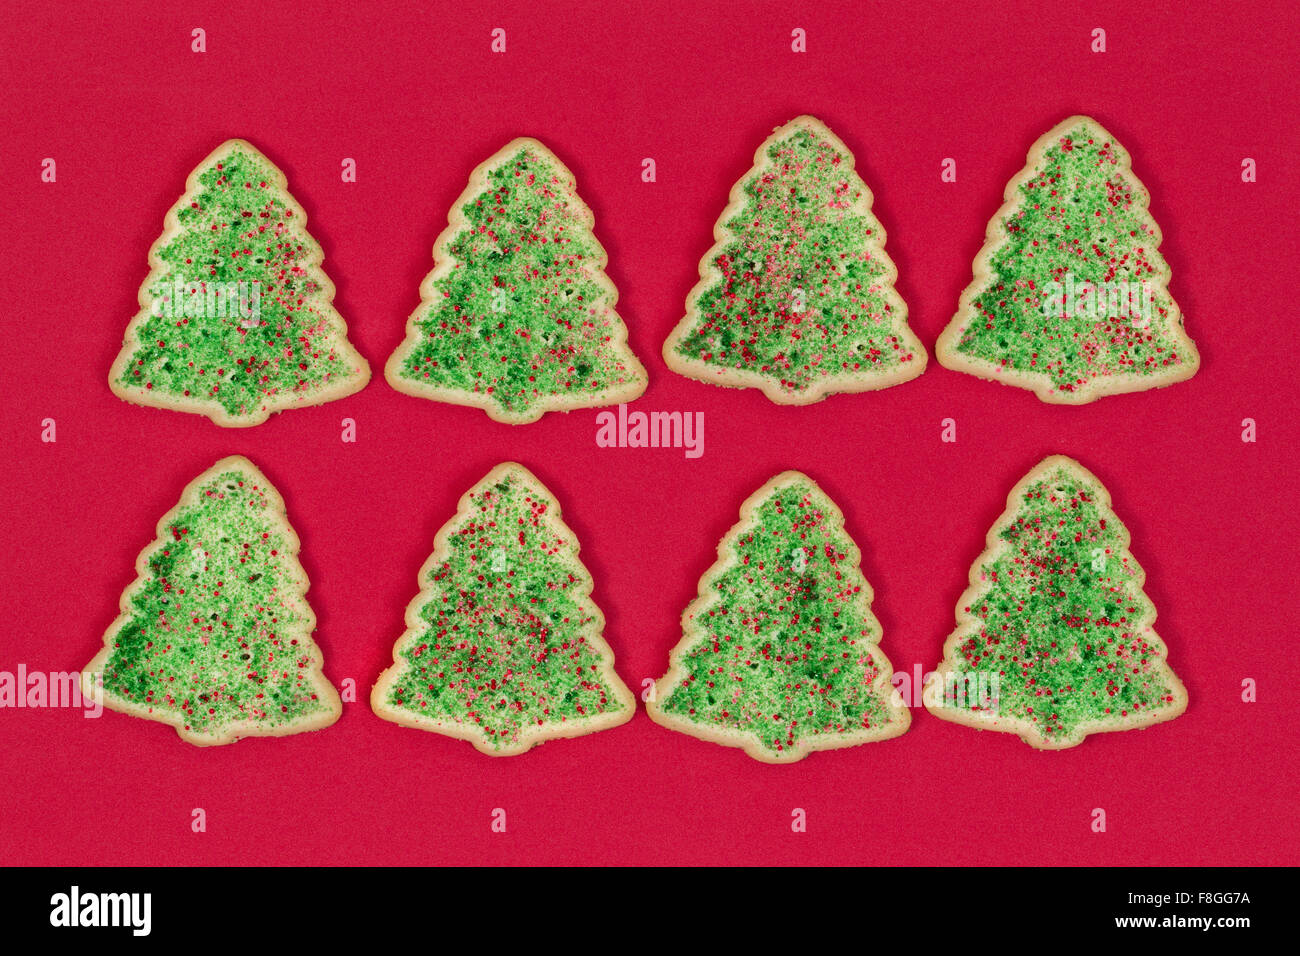 Les cookies en forme d'arbre de Noël organisé sur fond rouge. Banque D'Images